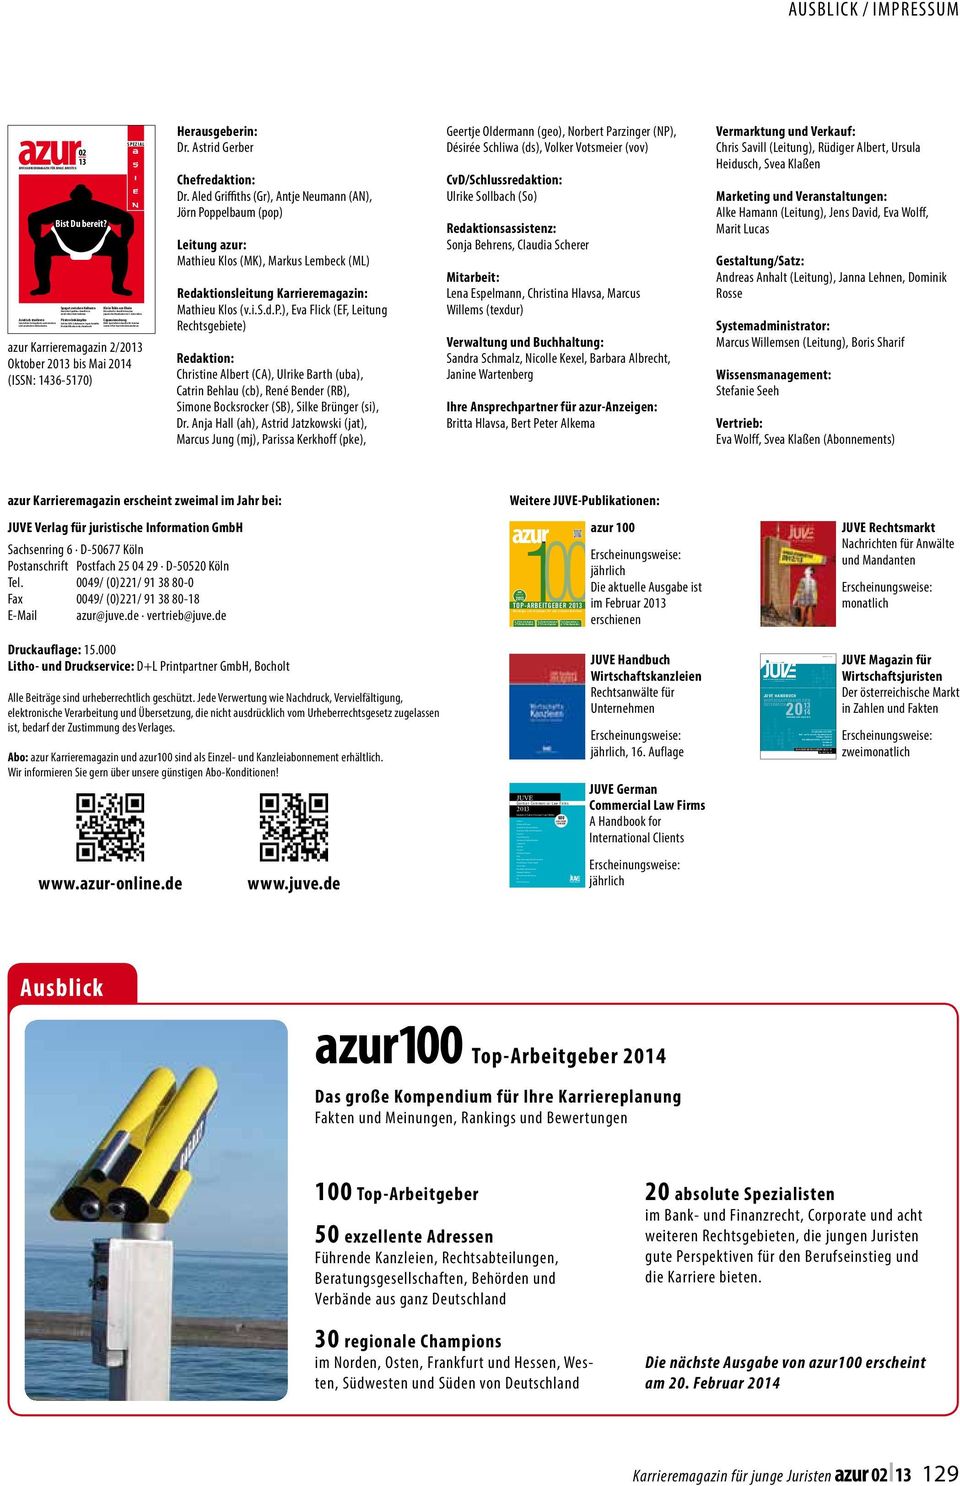 Restructuring and Insolvency Tax White Collar Crime www.juve.de september oktober 2013 Magazin für Wirtschaftsjuristen in Österreich sonderausgabe www.juve-verlag.